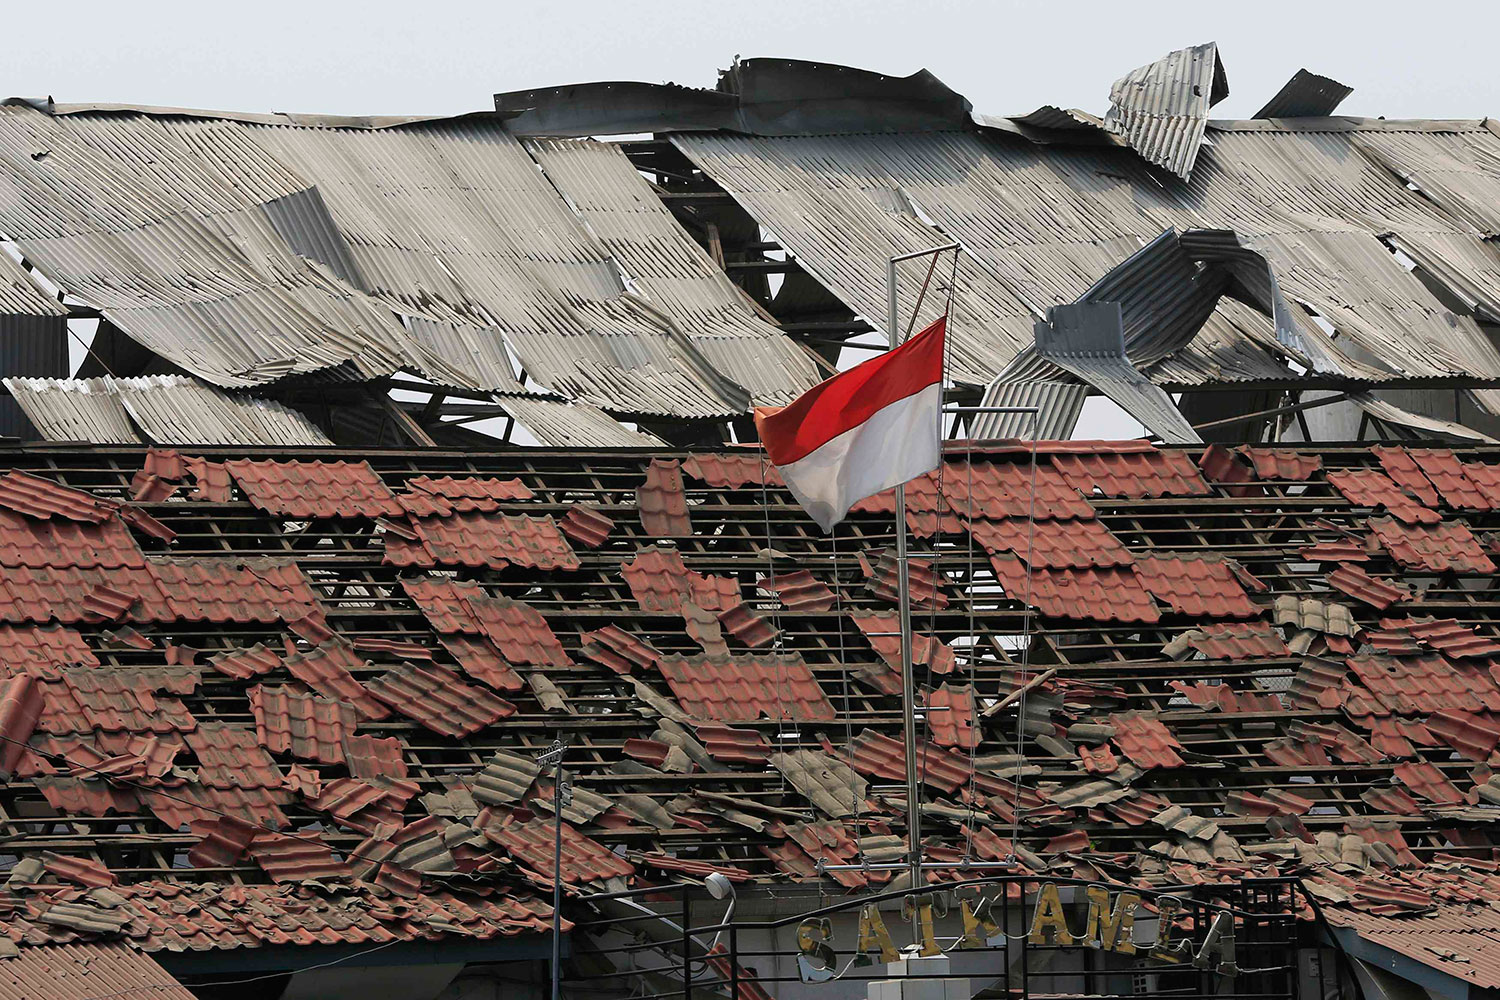 Una explosión en un almacén deja 1 muerto y decenas de heridos en Indonesia